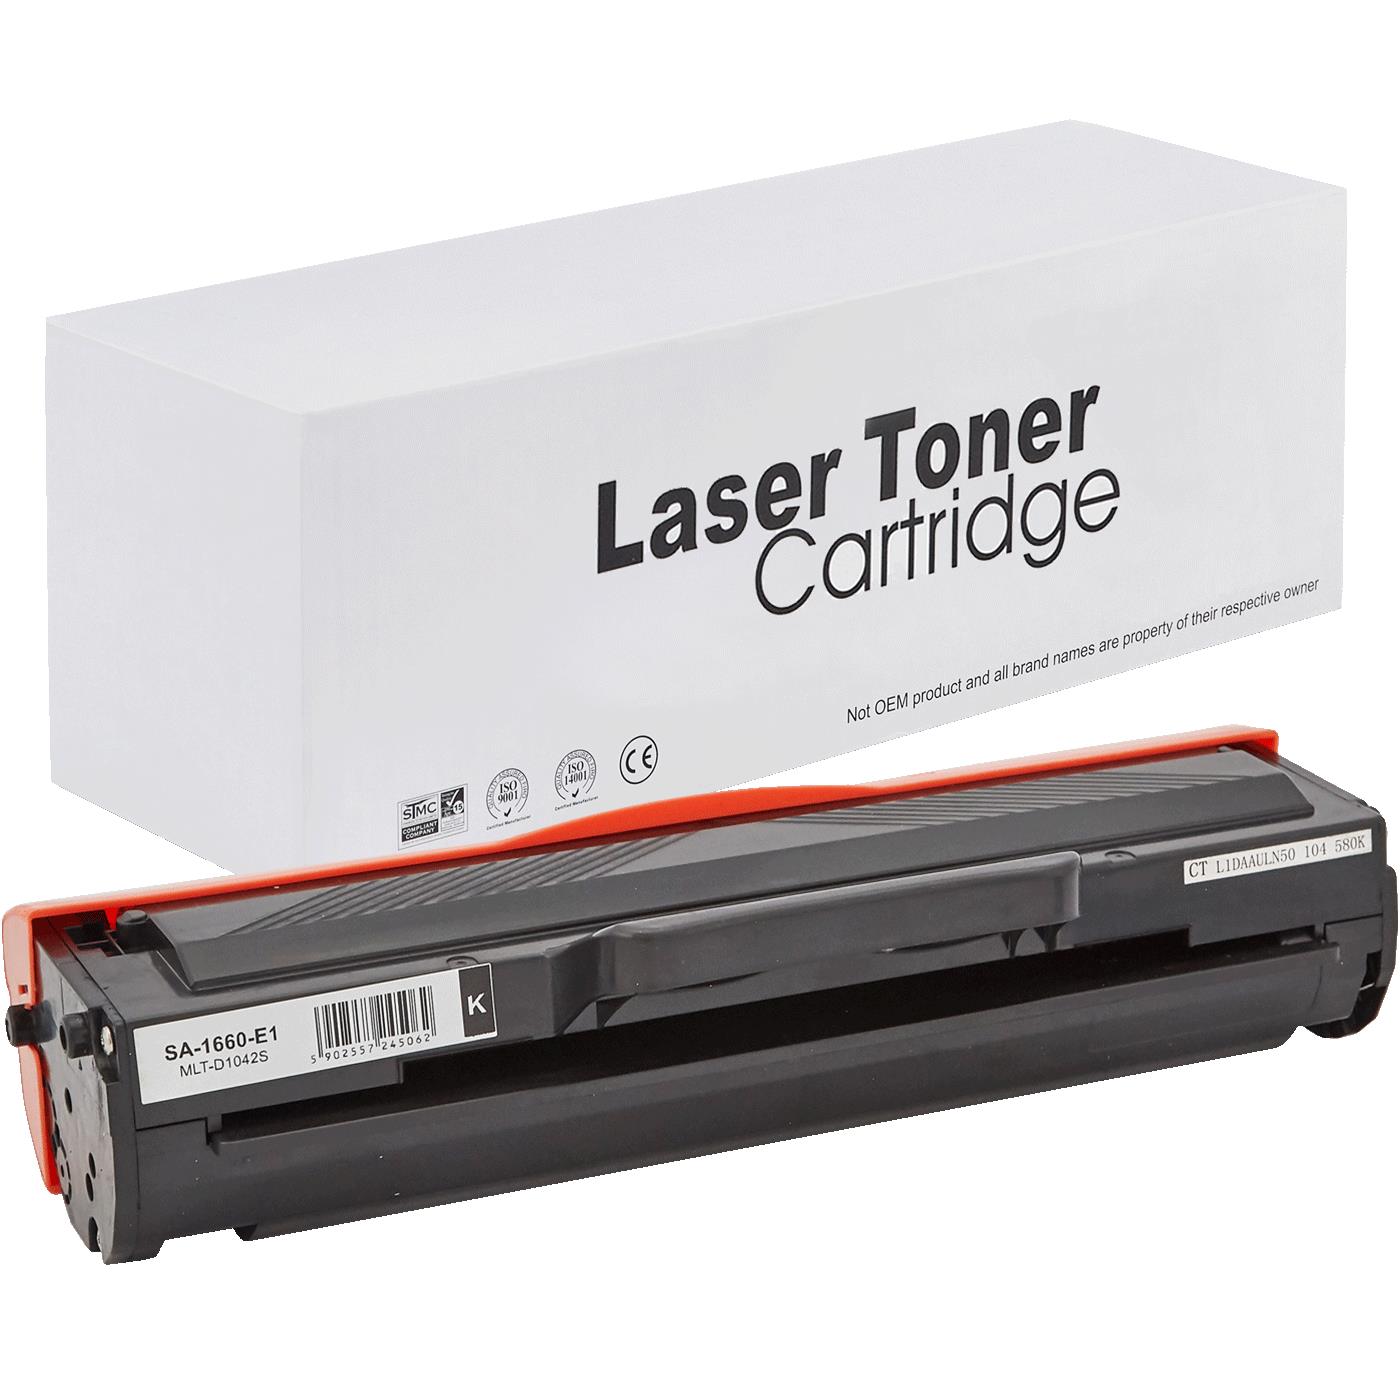 съвместима тонер касета за принтери и печатащи устройства на Samsung SCX 3205 Toner SA-1660 | MLT-D1042 / D1042. Ниски цени, прецизно изпълнение, високо качество.